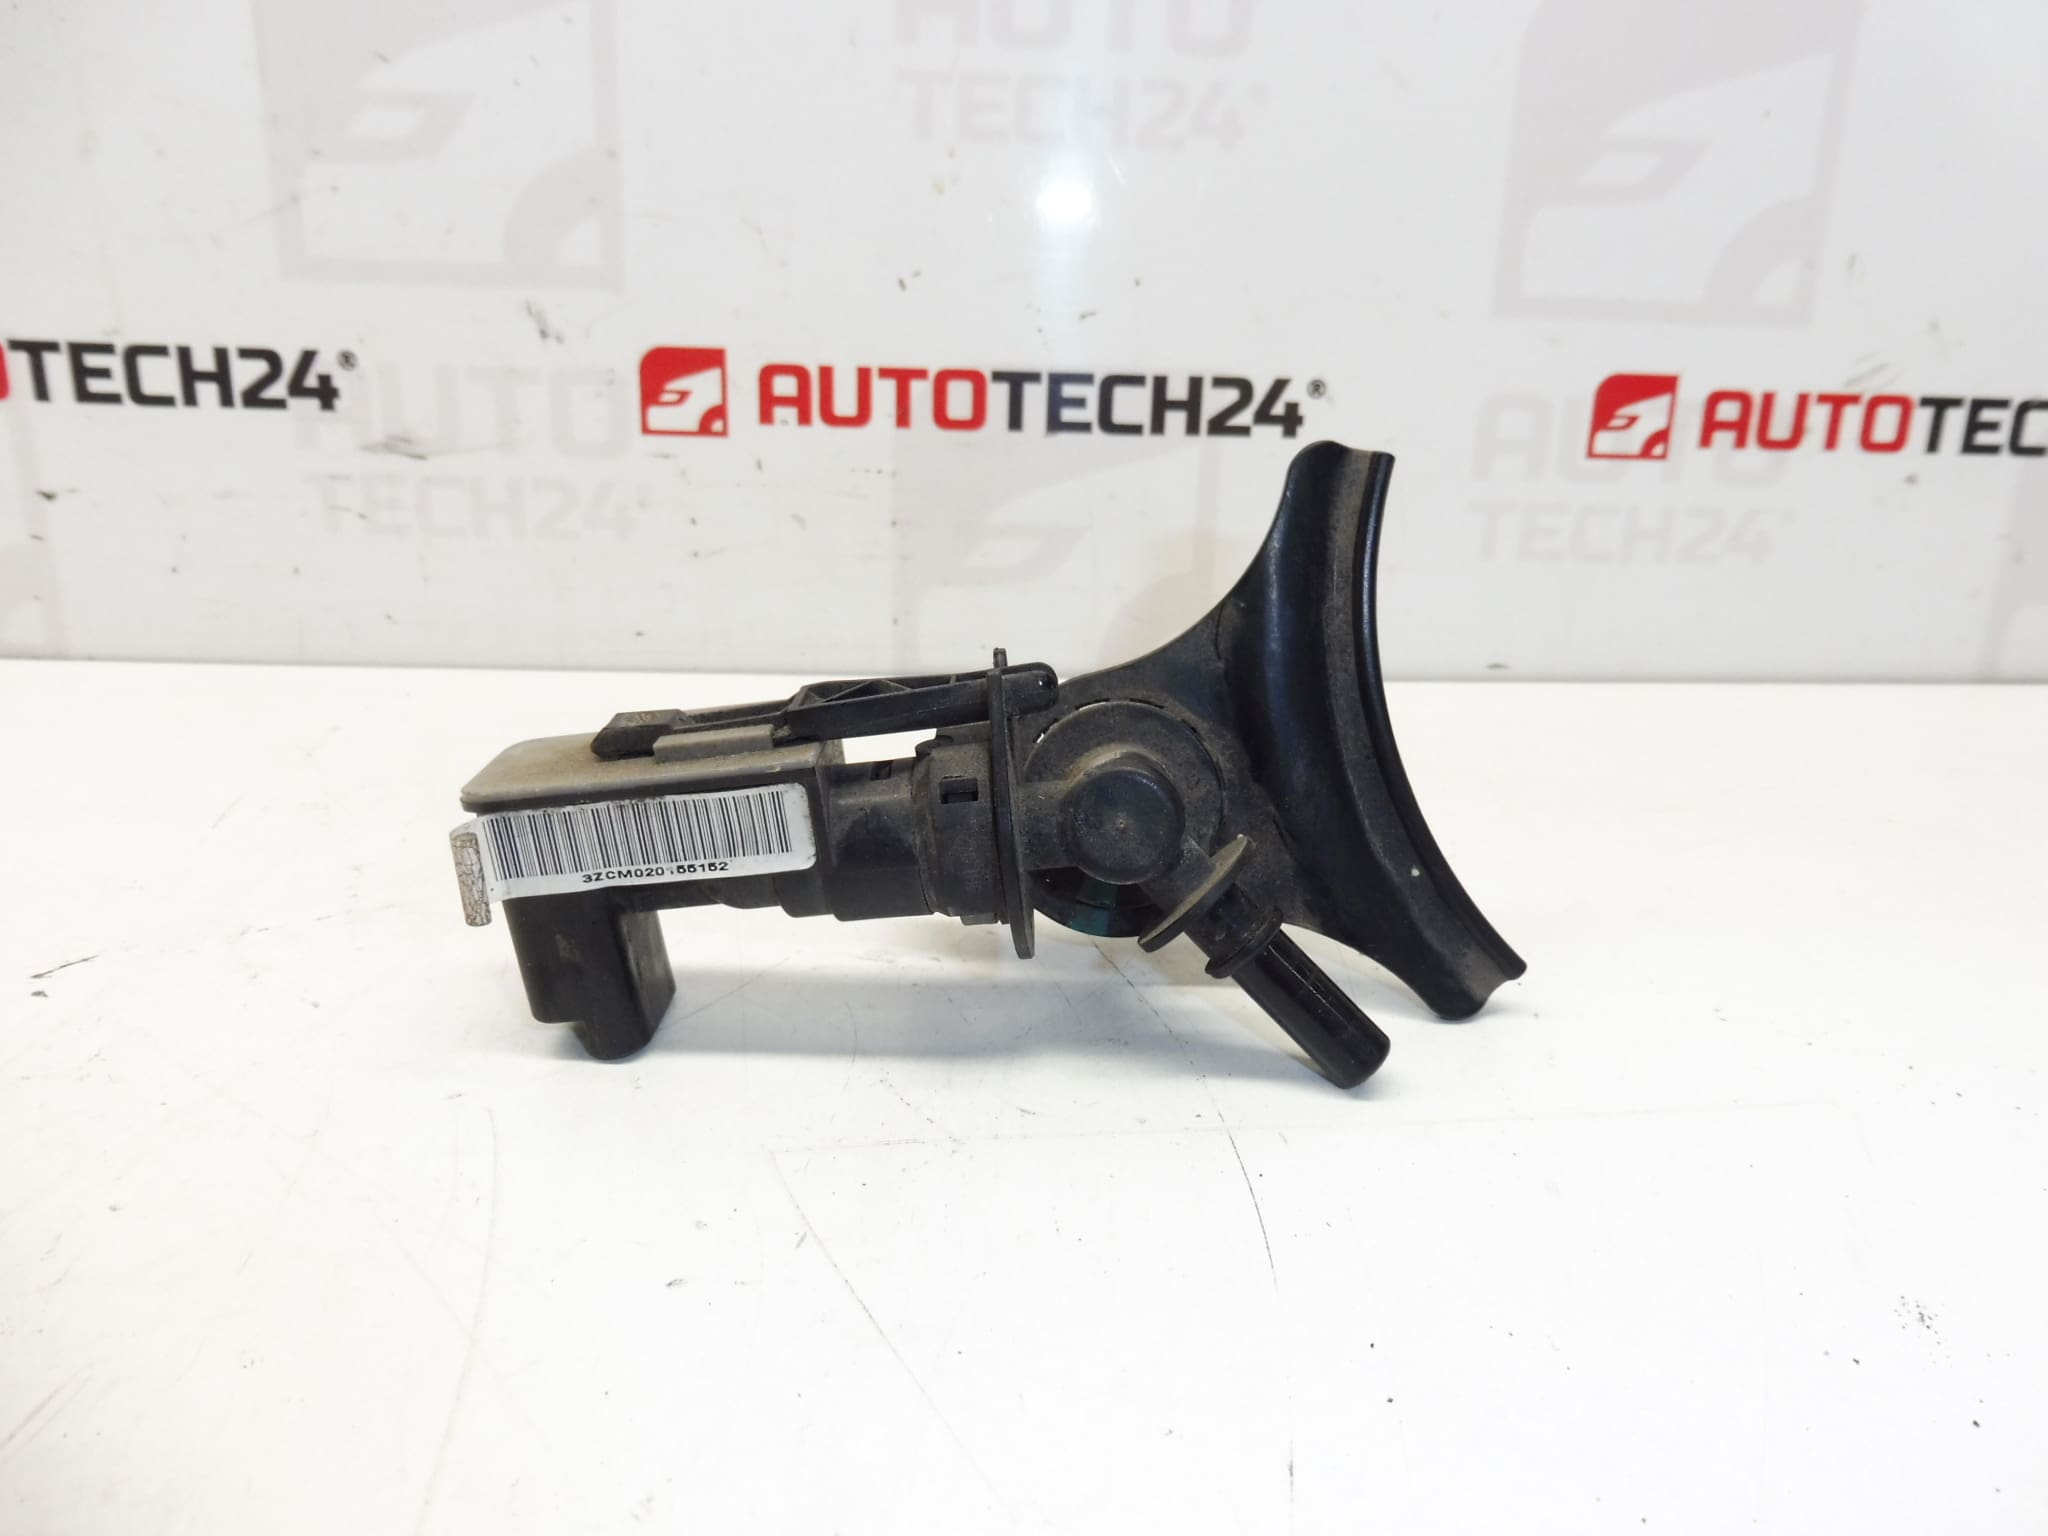 Öldrucksensor 0-5 bar für Jaegeranzeige - KFZ-Ersatzteilehandel für  Citroën-Fahrzeuge